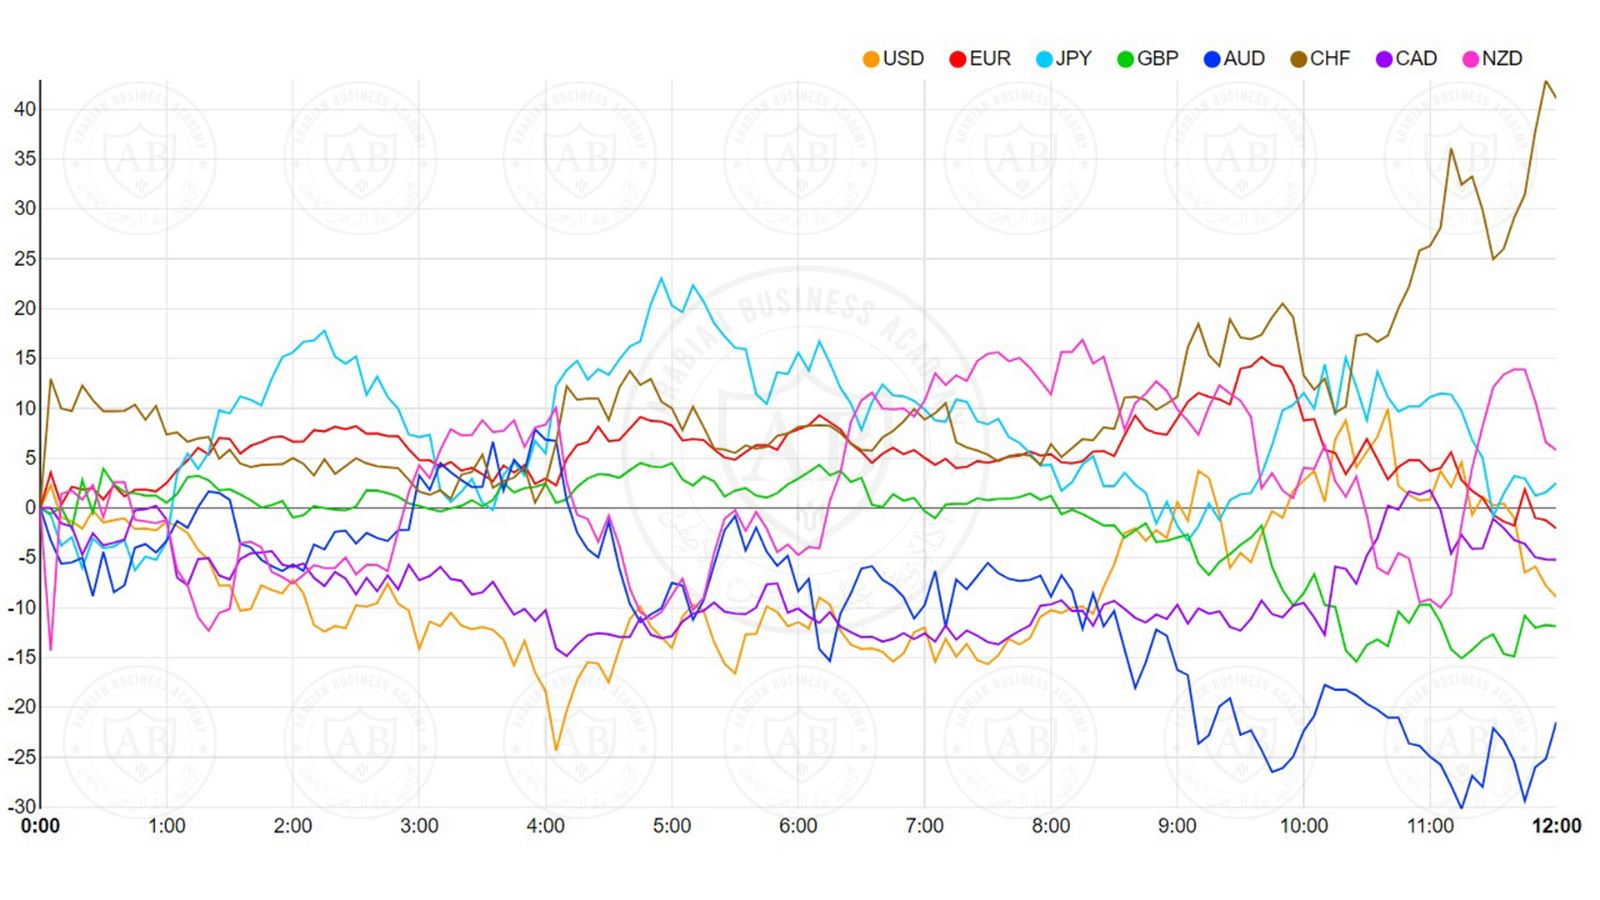 الفرنك السويسري الأقوى بين العملات اليوم والدولار الاسترالي الأضعف والأسواق تترقب بيانات وأحداث هامة هذا الأسبوع